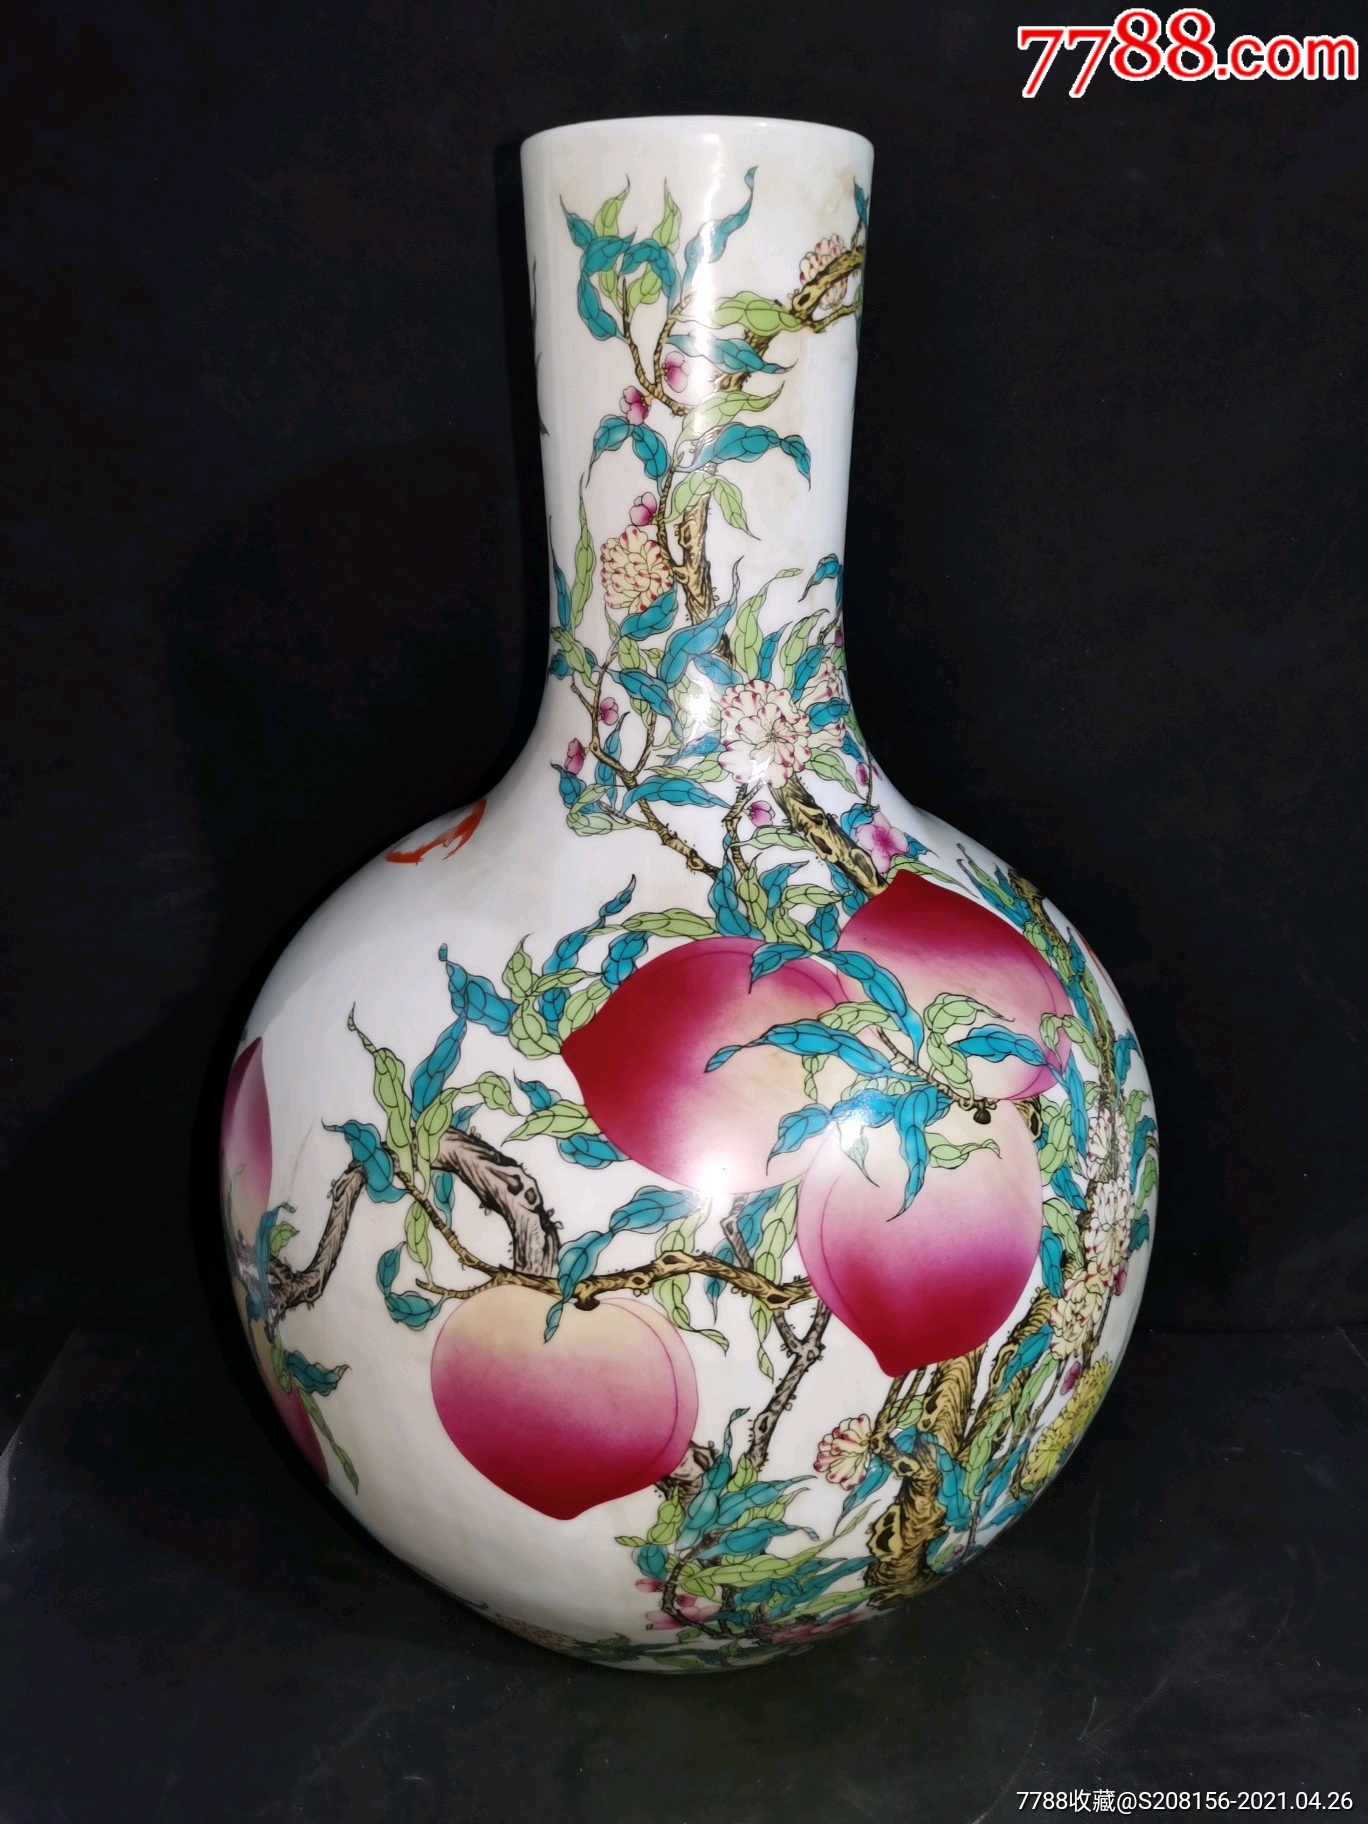 瓷瓶,天球瓶,乾隆年制,手绘粉彩九桃大天球瓶_价格1280元_第1张_7788